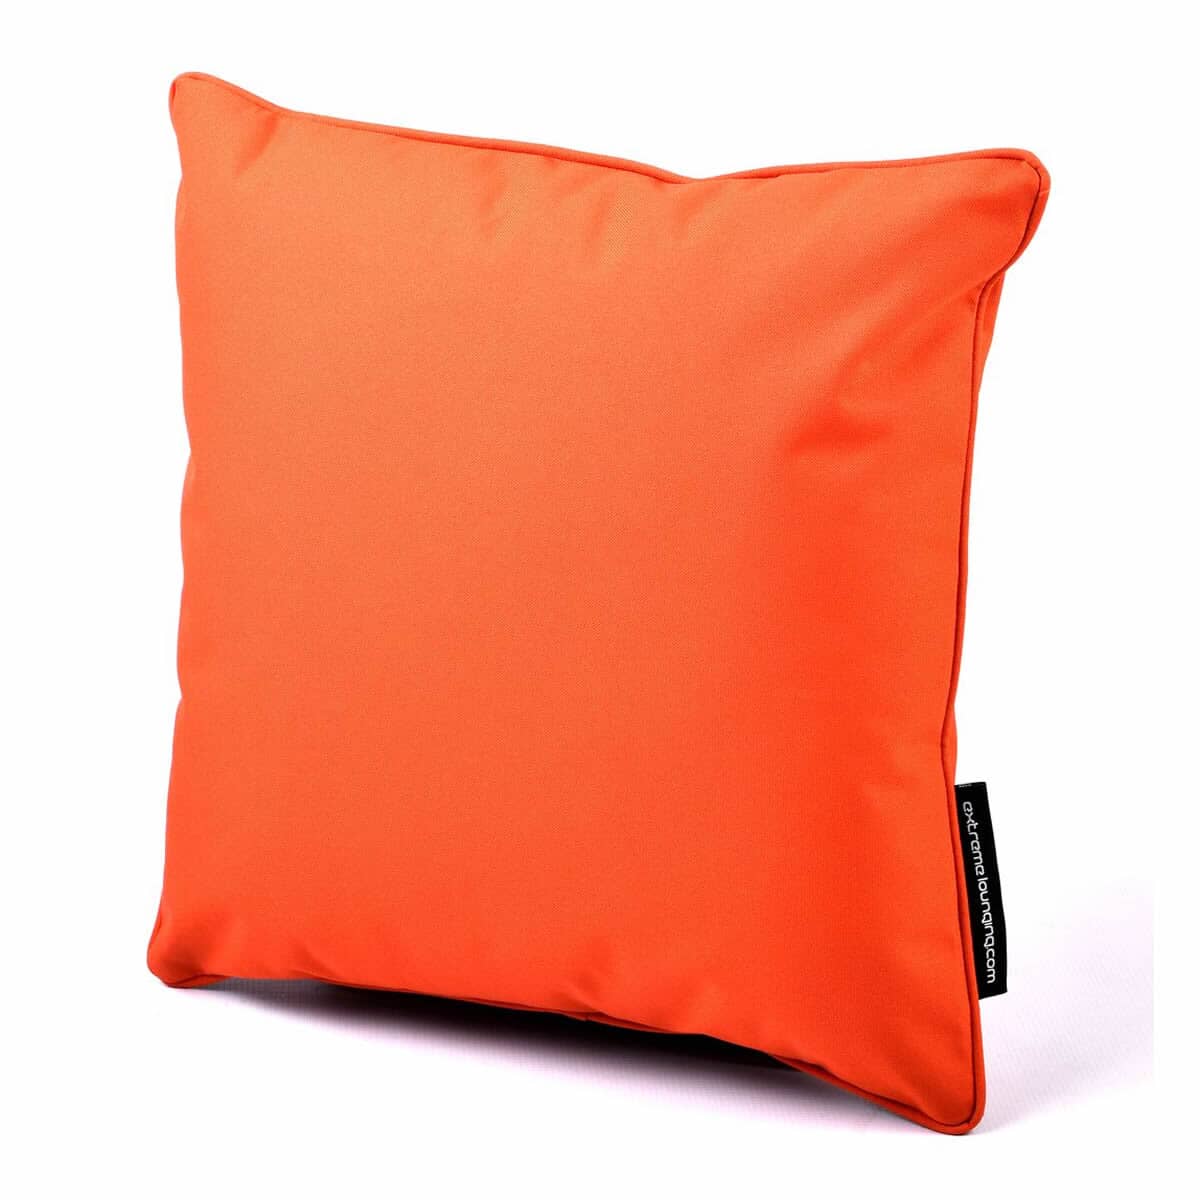 Extreme Lounging B Cushion Orange